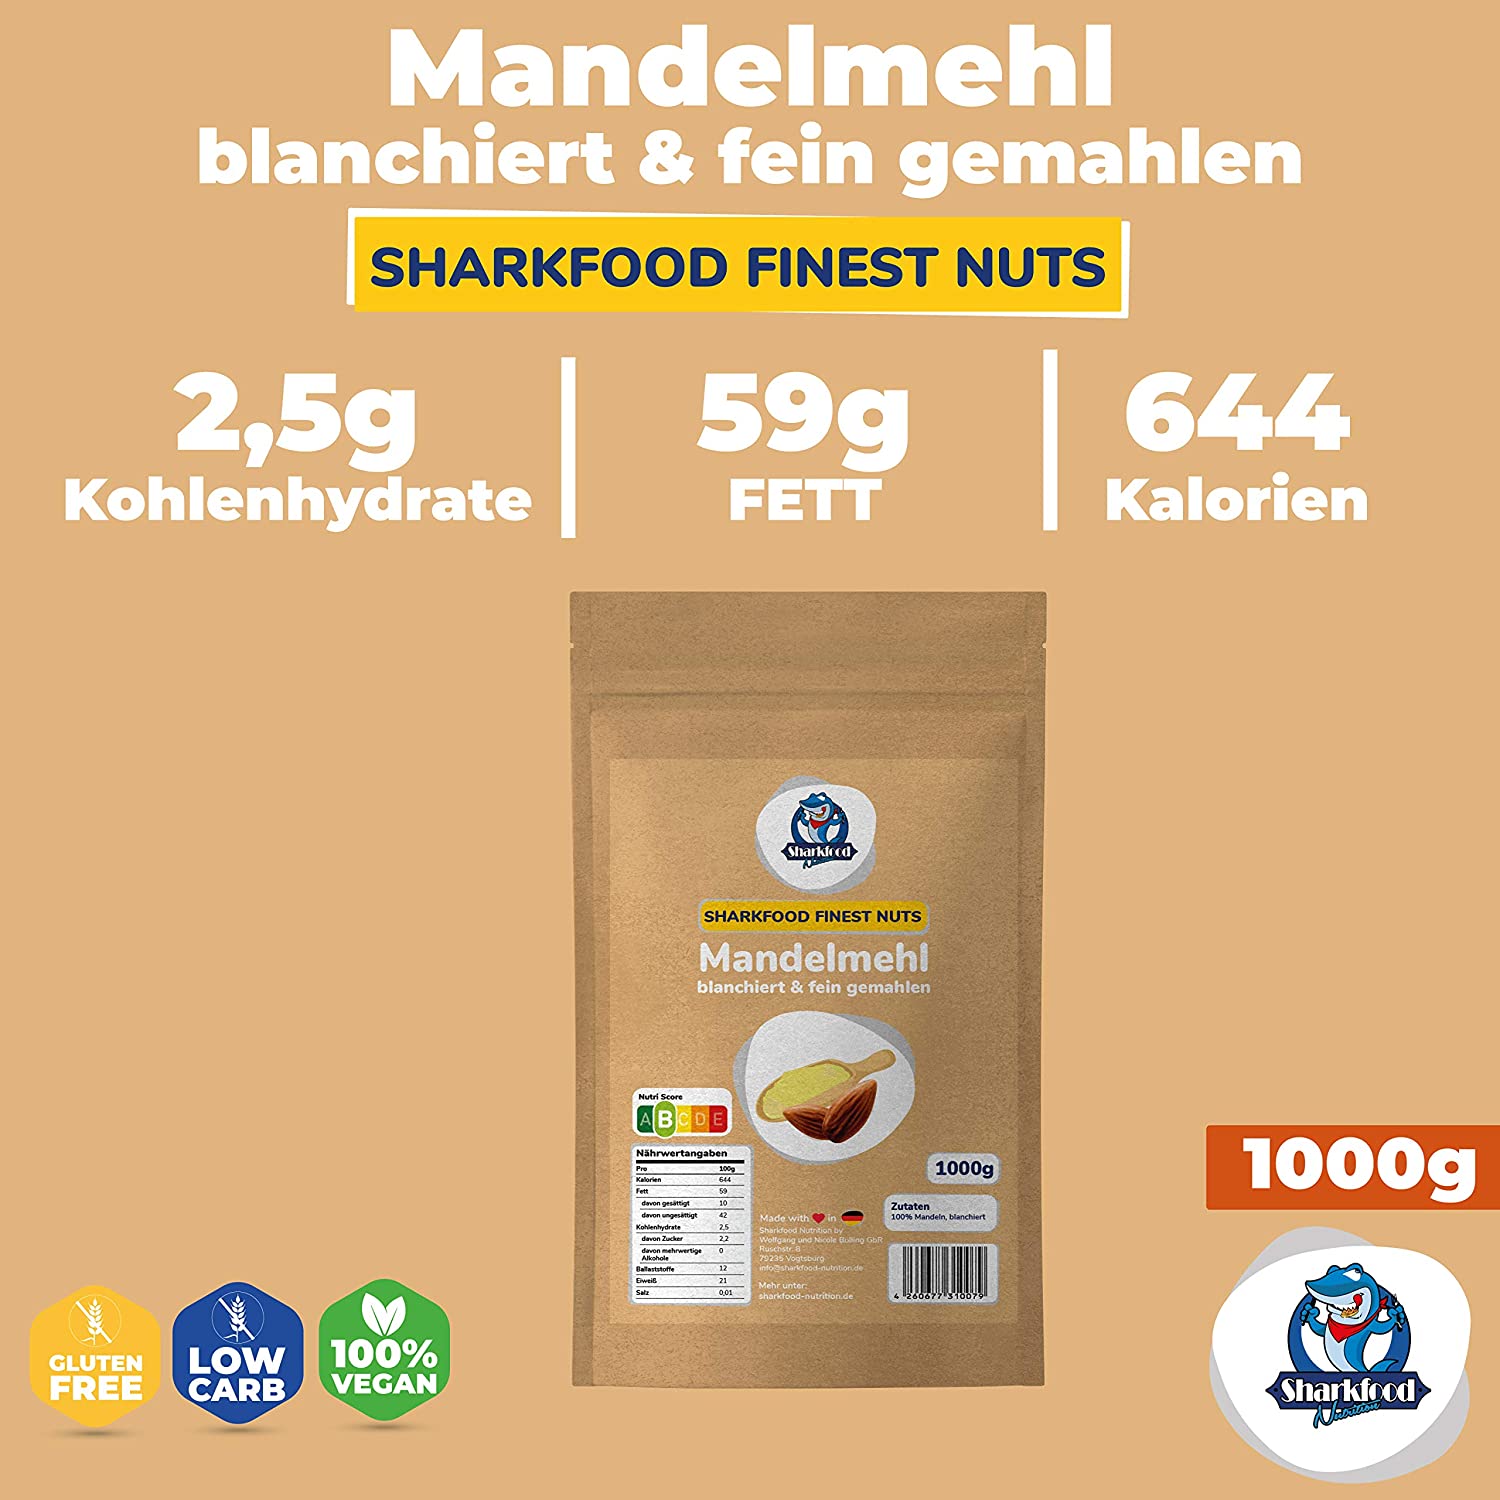 Premium Mandelmehl 1 KG - fein gemahlen, naturbelassen & nicht entölt, aus blanchierten Mandeln (weiß) - Low Carb & Keto geeignet - Vollfett zum Backen & Kochen - 1000 g - Sharkfood Nutrition